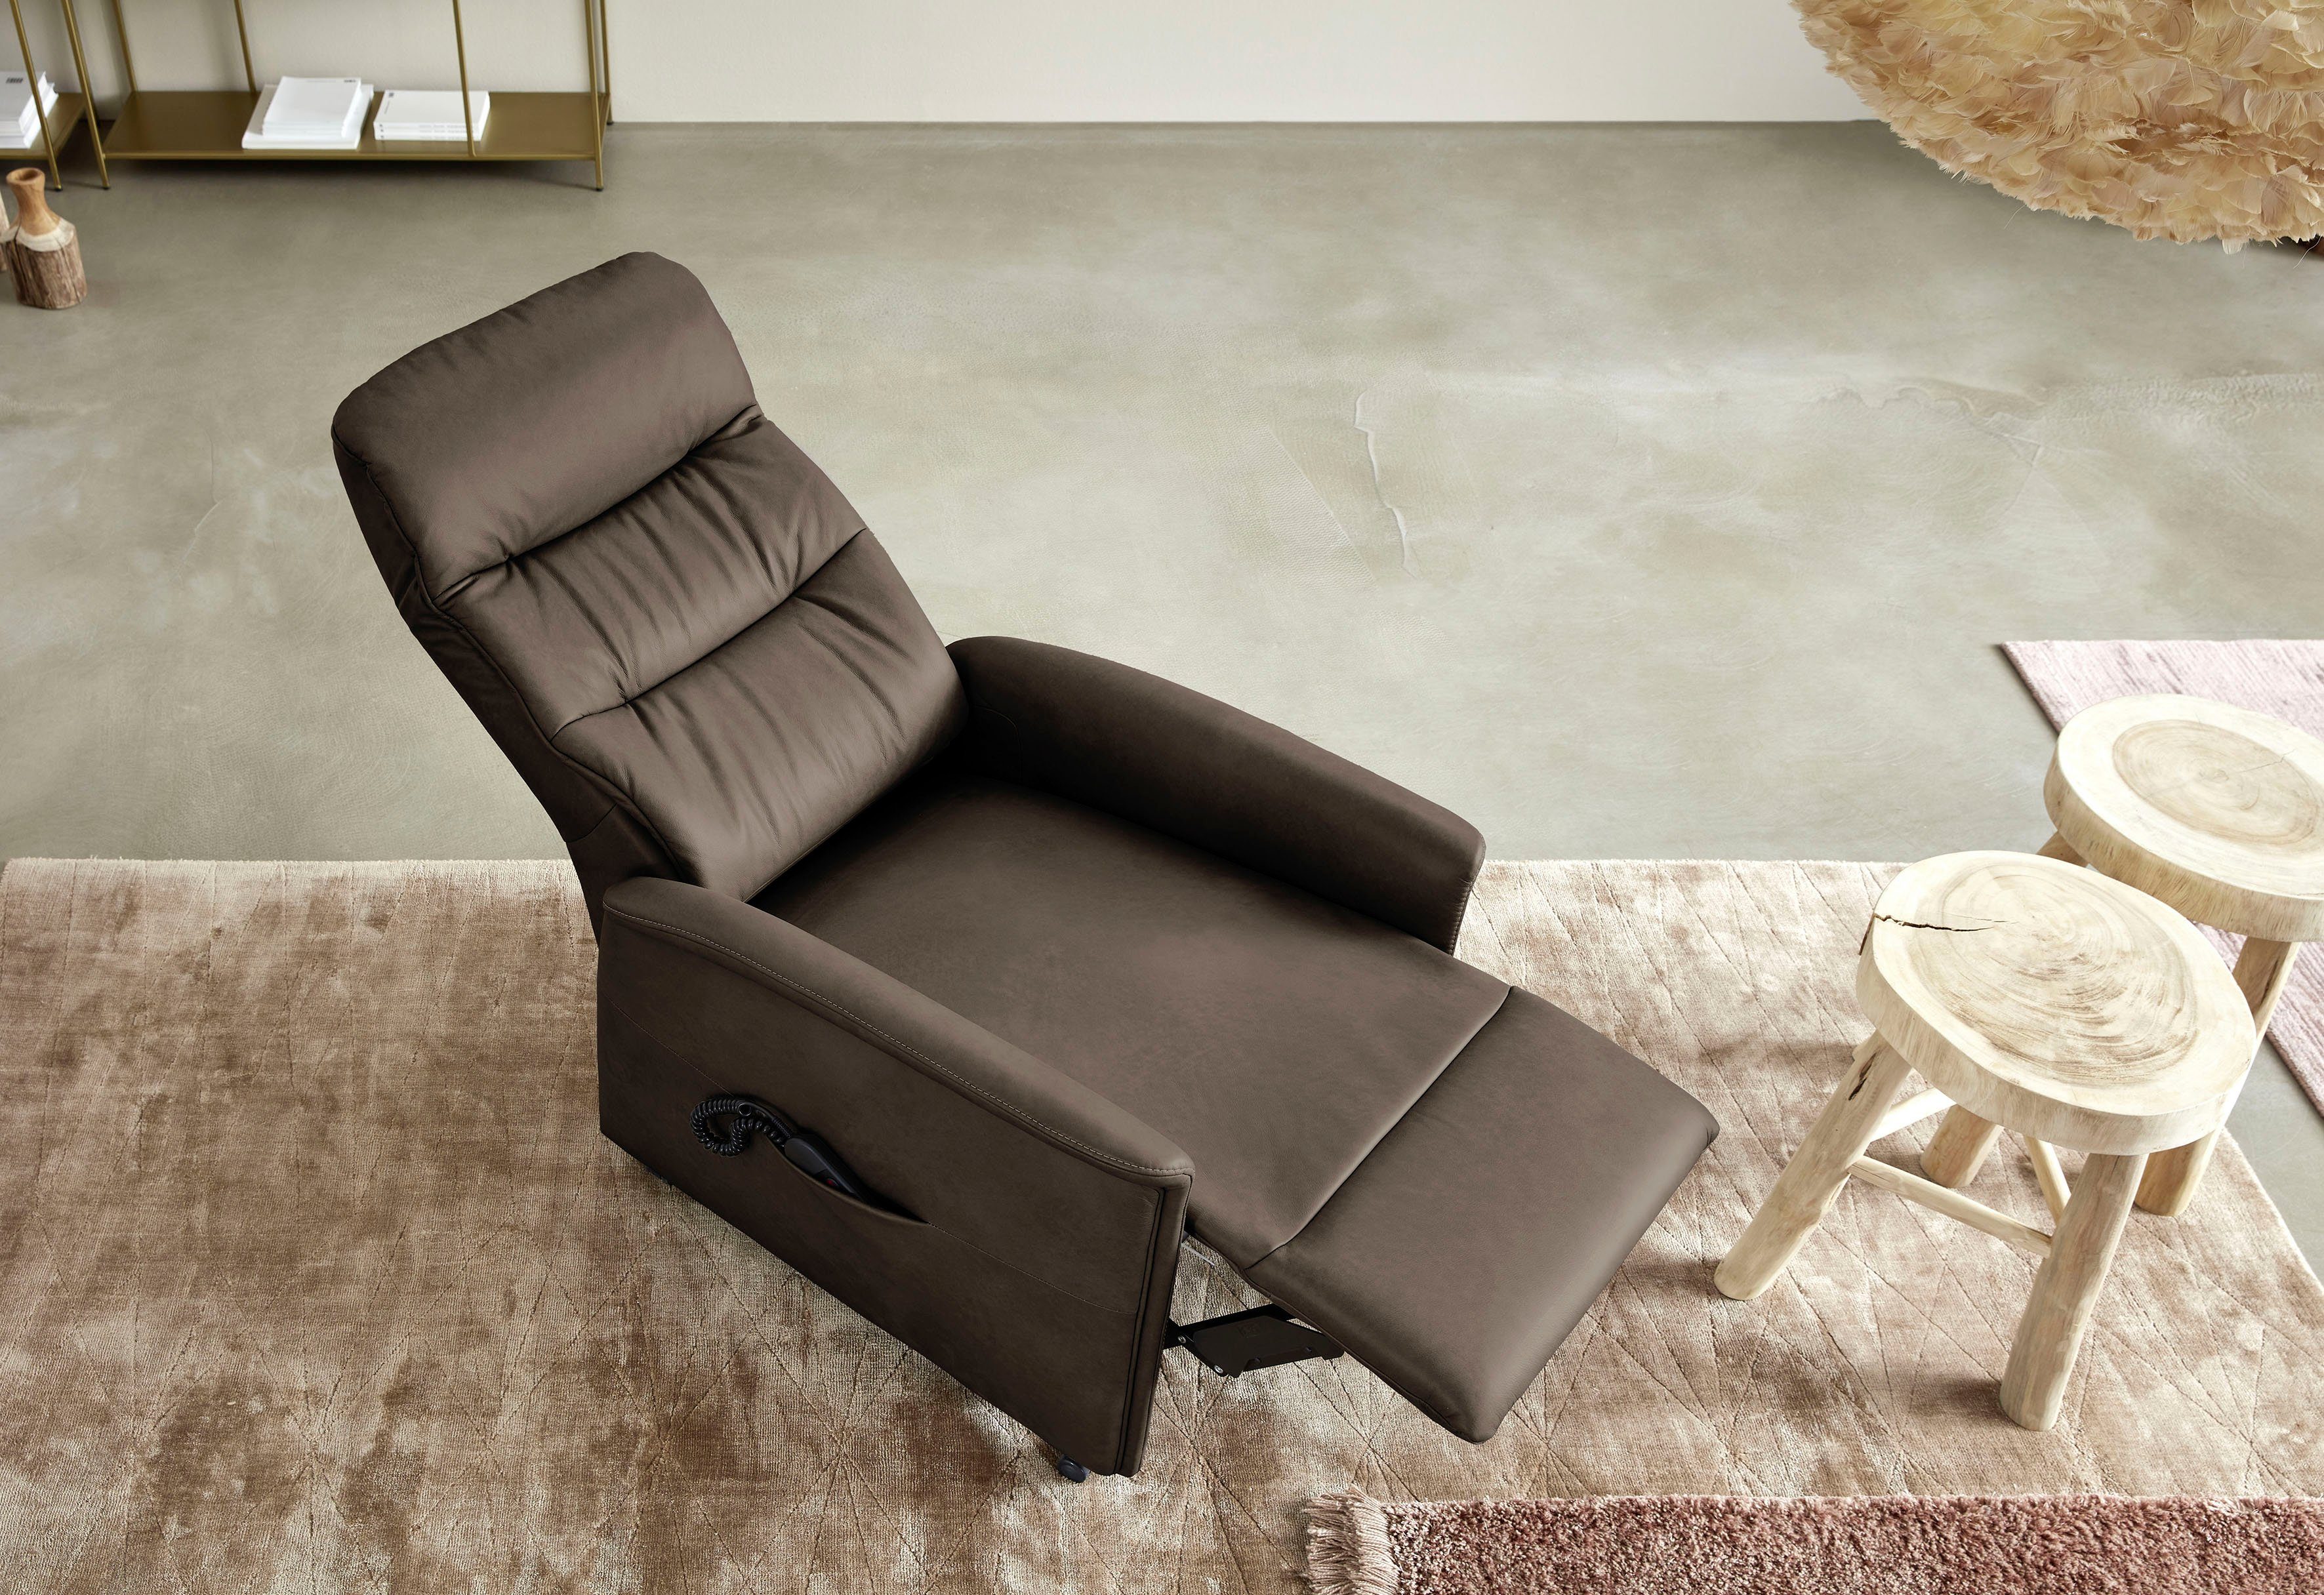 himolla oder manuell Sitzhöhen, Relaxsessel in himolla 3 elektrisch verstellbar, Aufstehhilfe 9051,